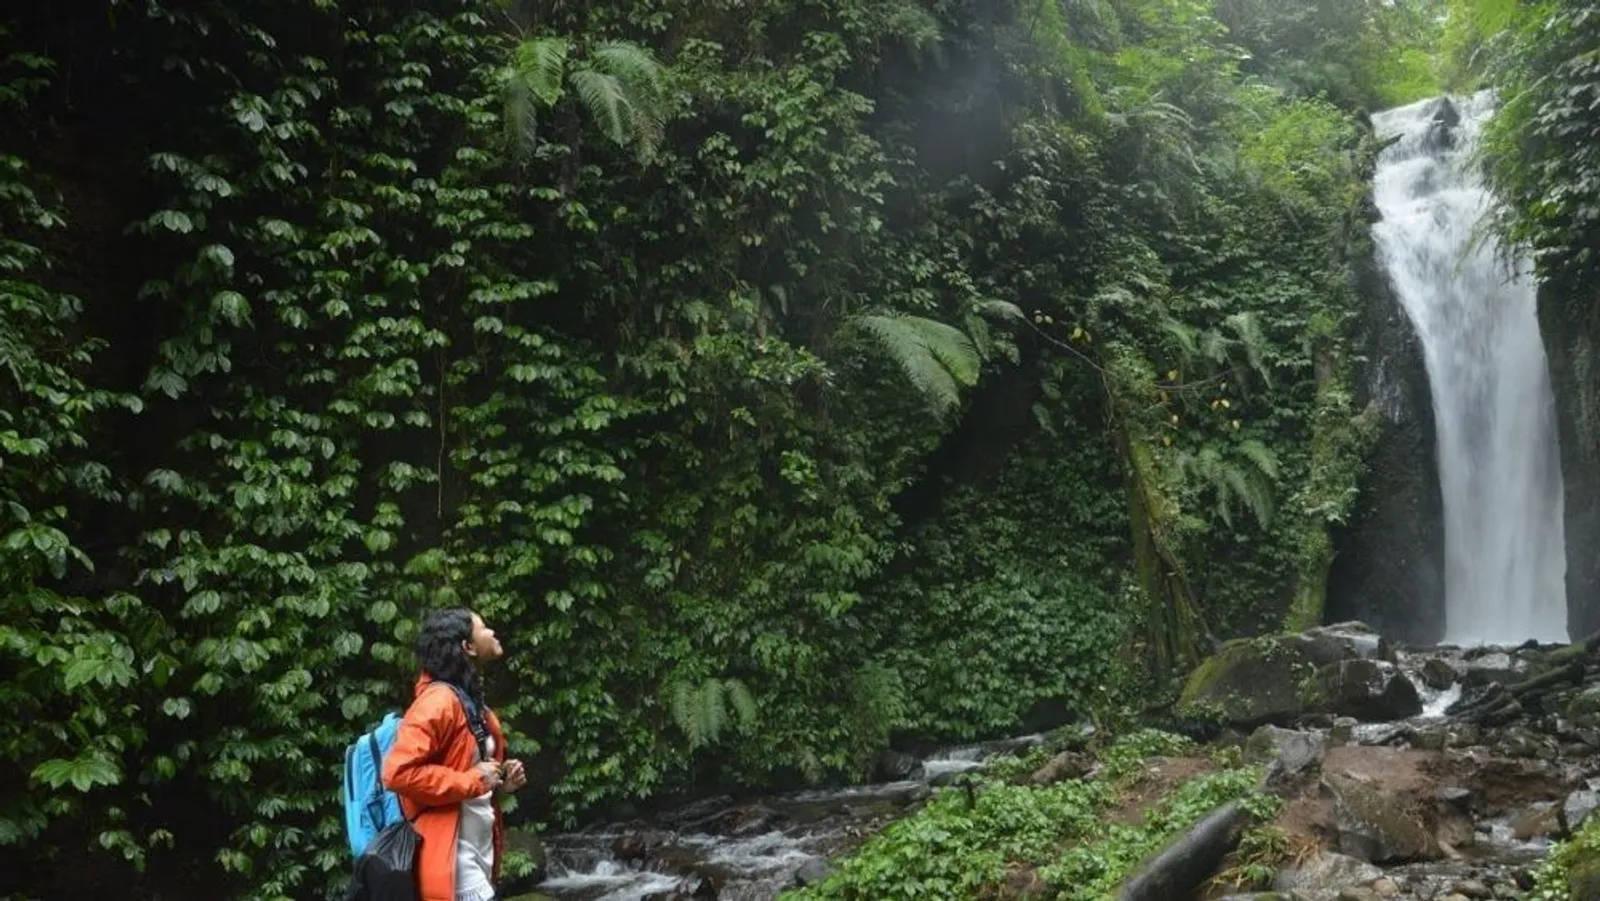 Cek 10 Keindahan Wisata Alam di Ponorogo, Salah Satunya Tanah Goyang!